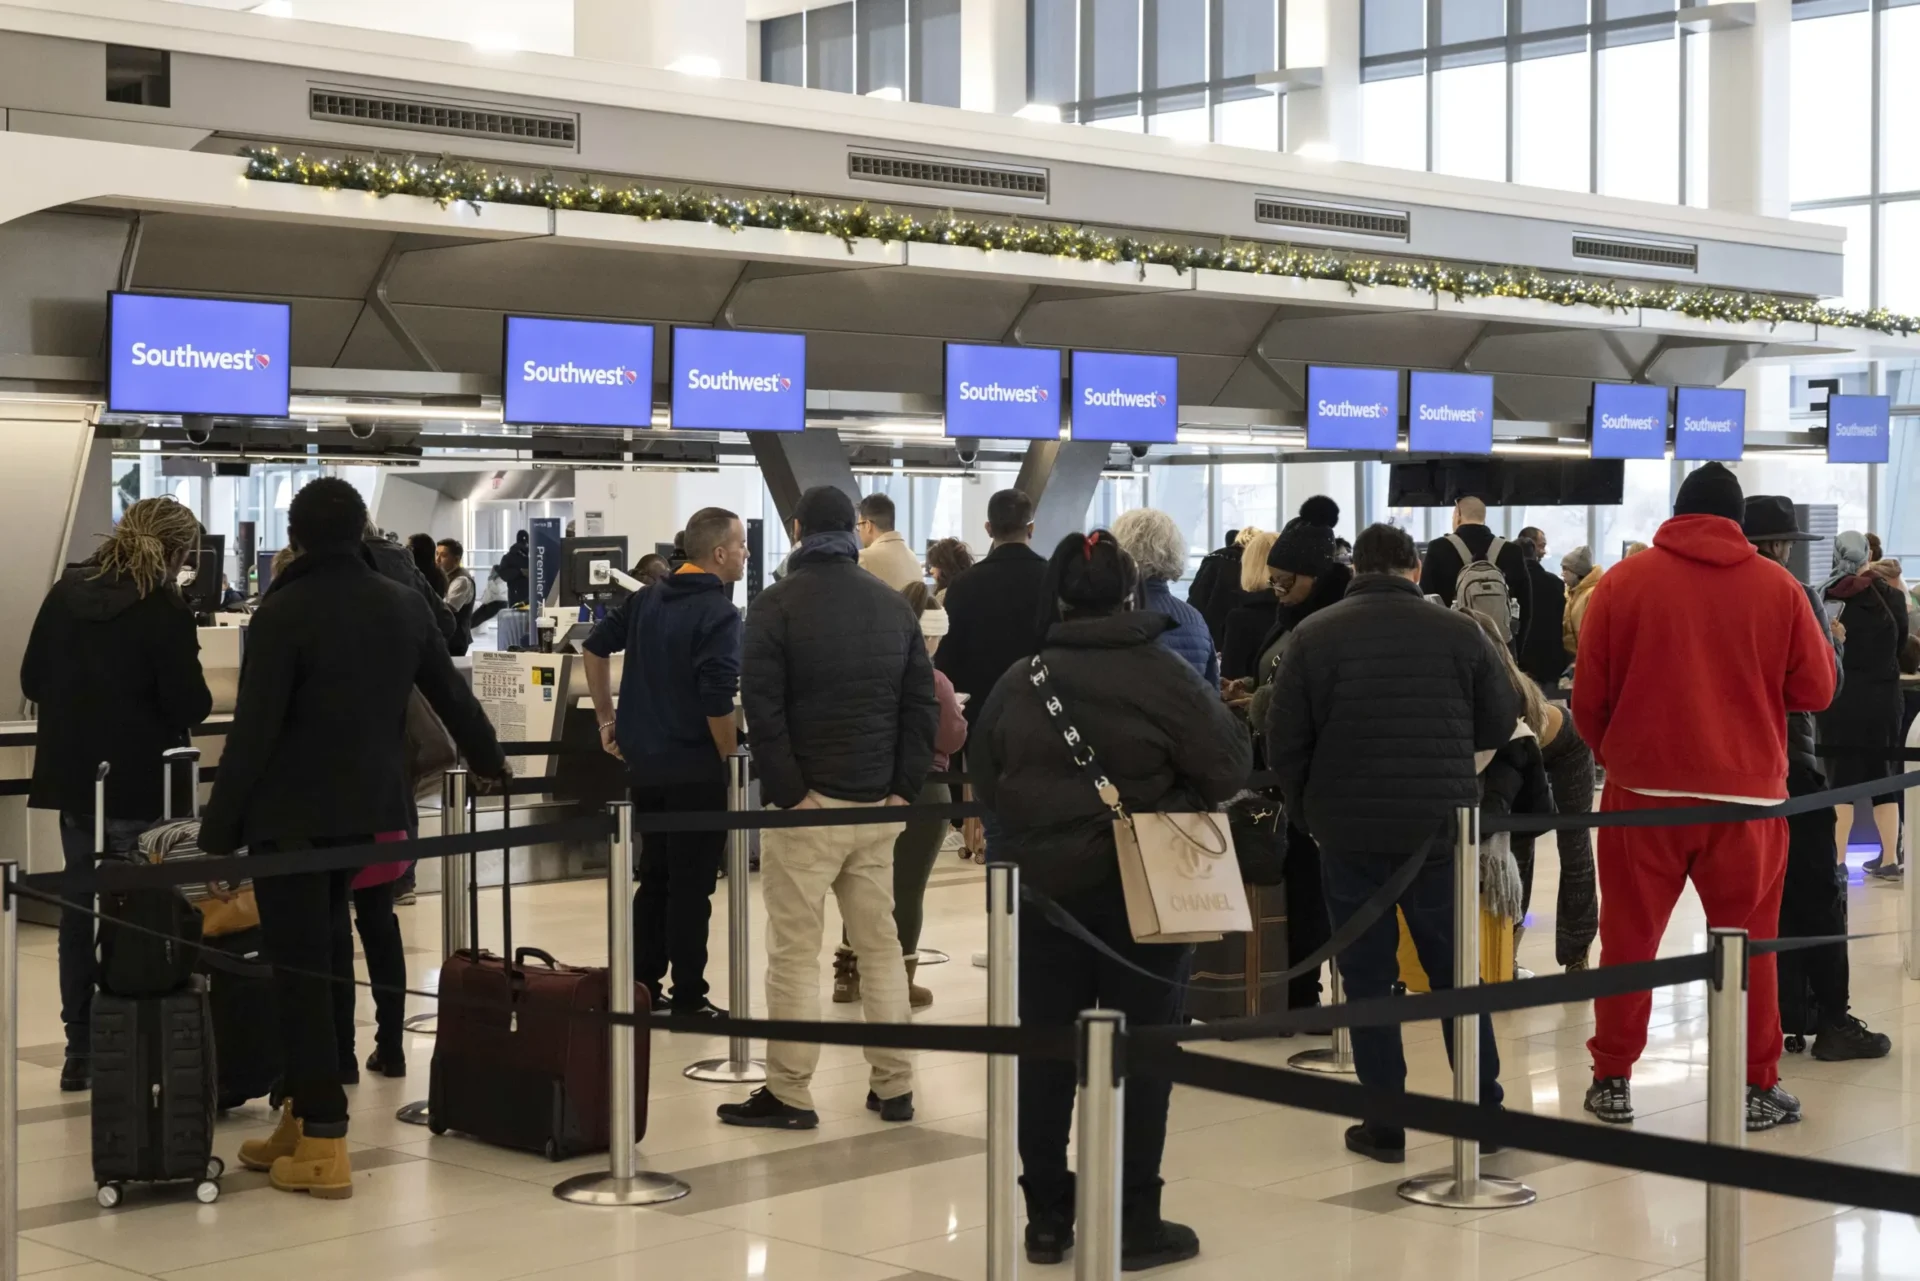 Estados Unidos propondrá nuevas reglas para cancelaciones y retrasos de aerolíneas